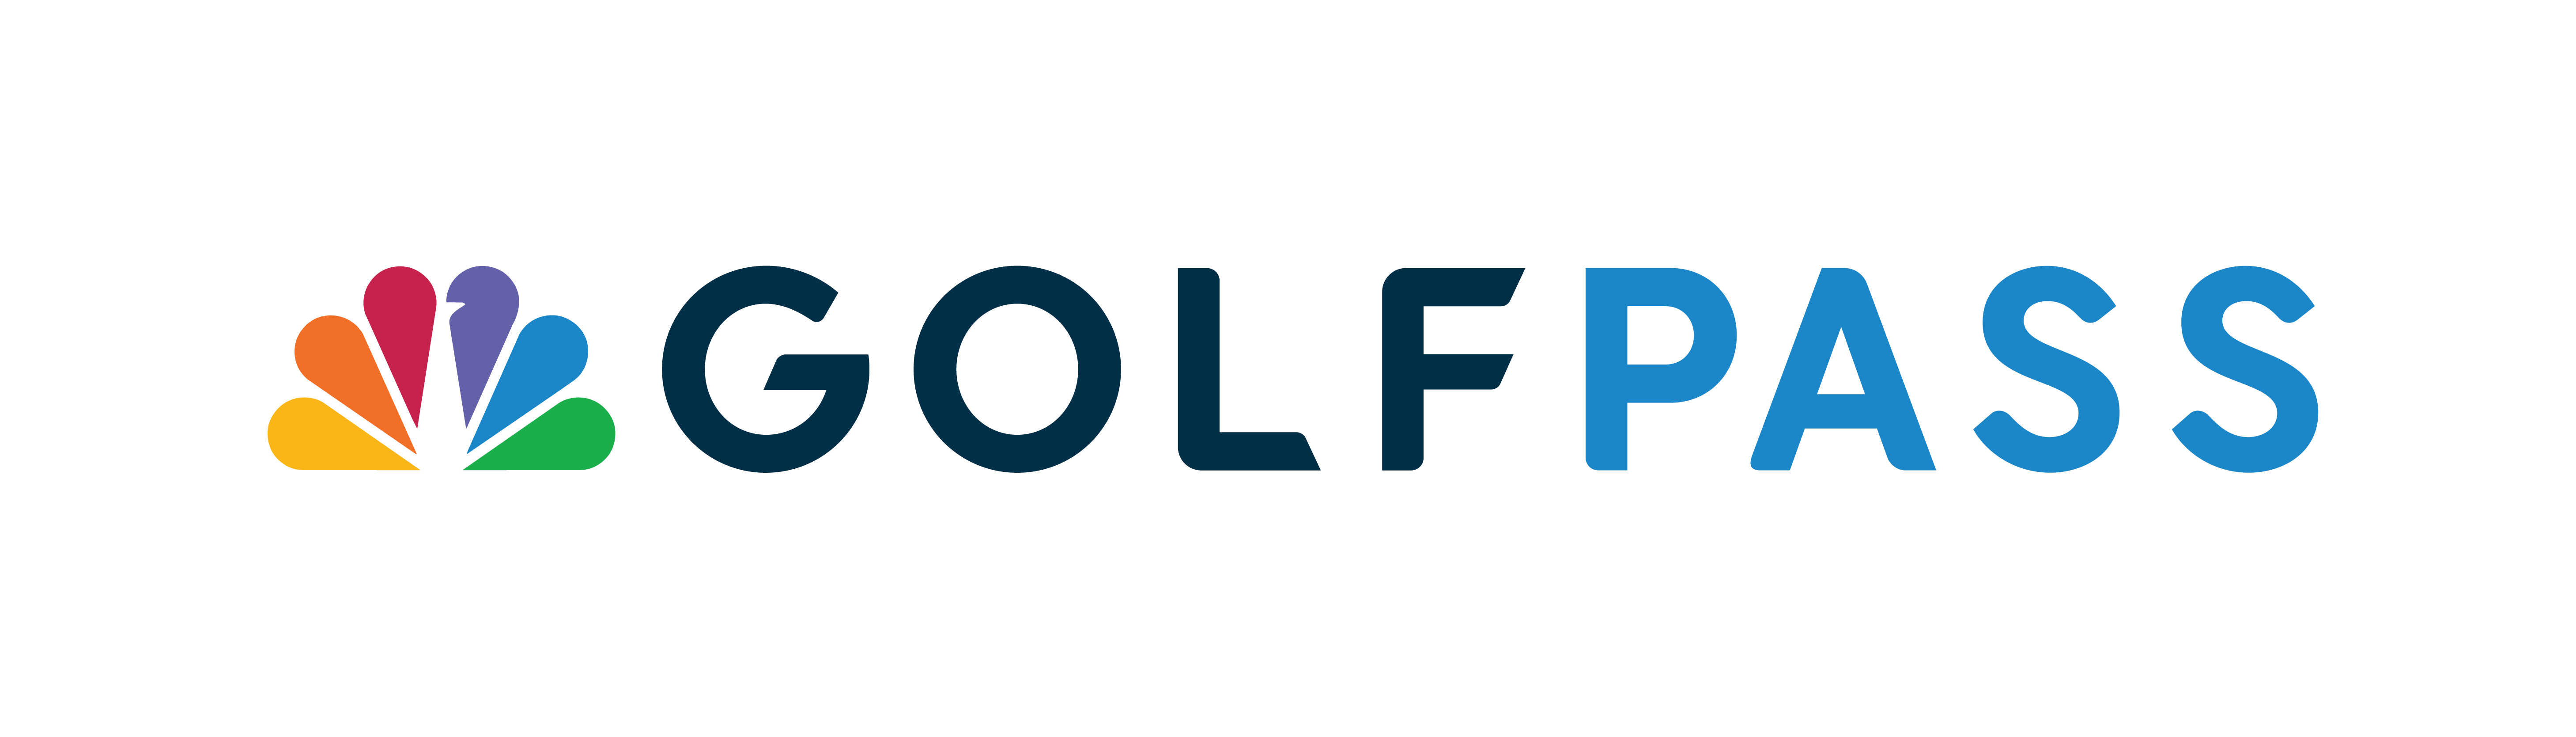 GolfPass logo